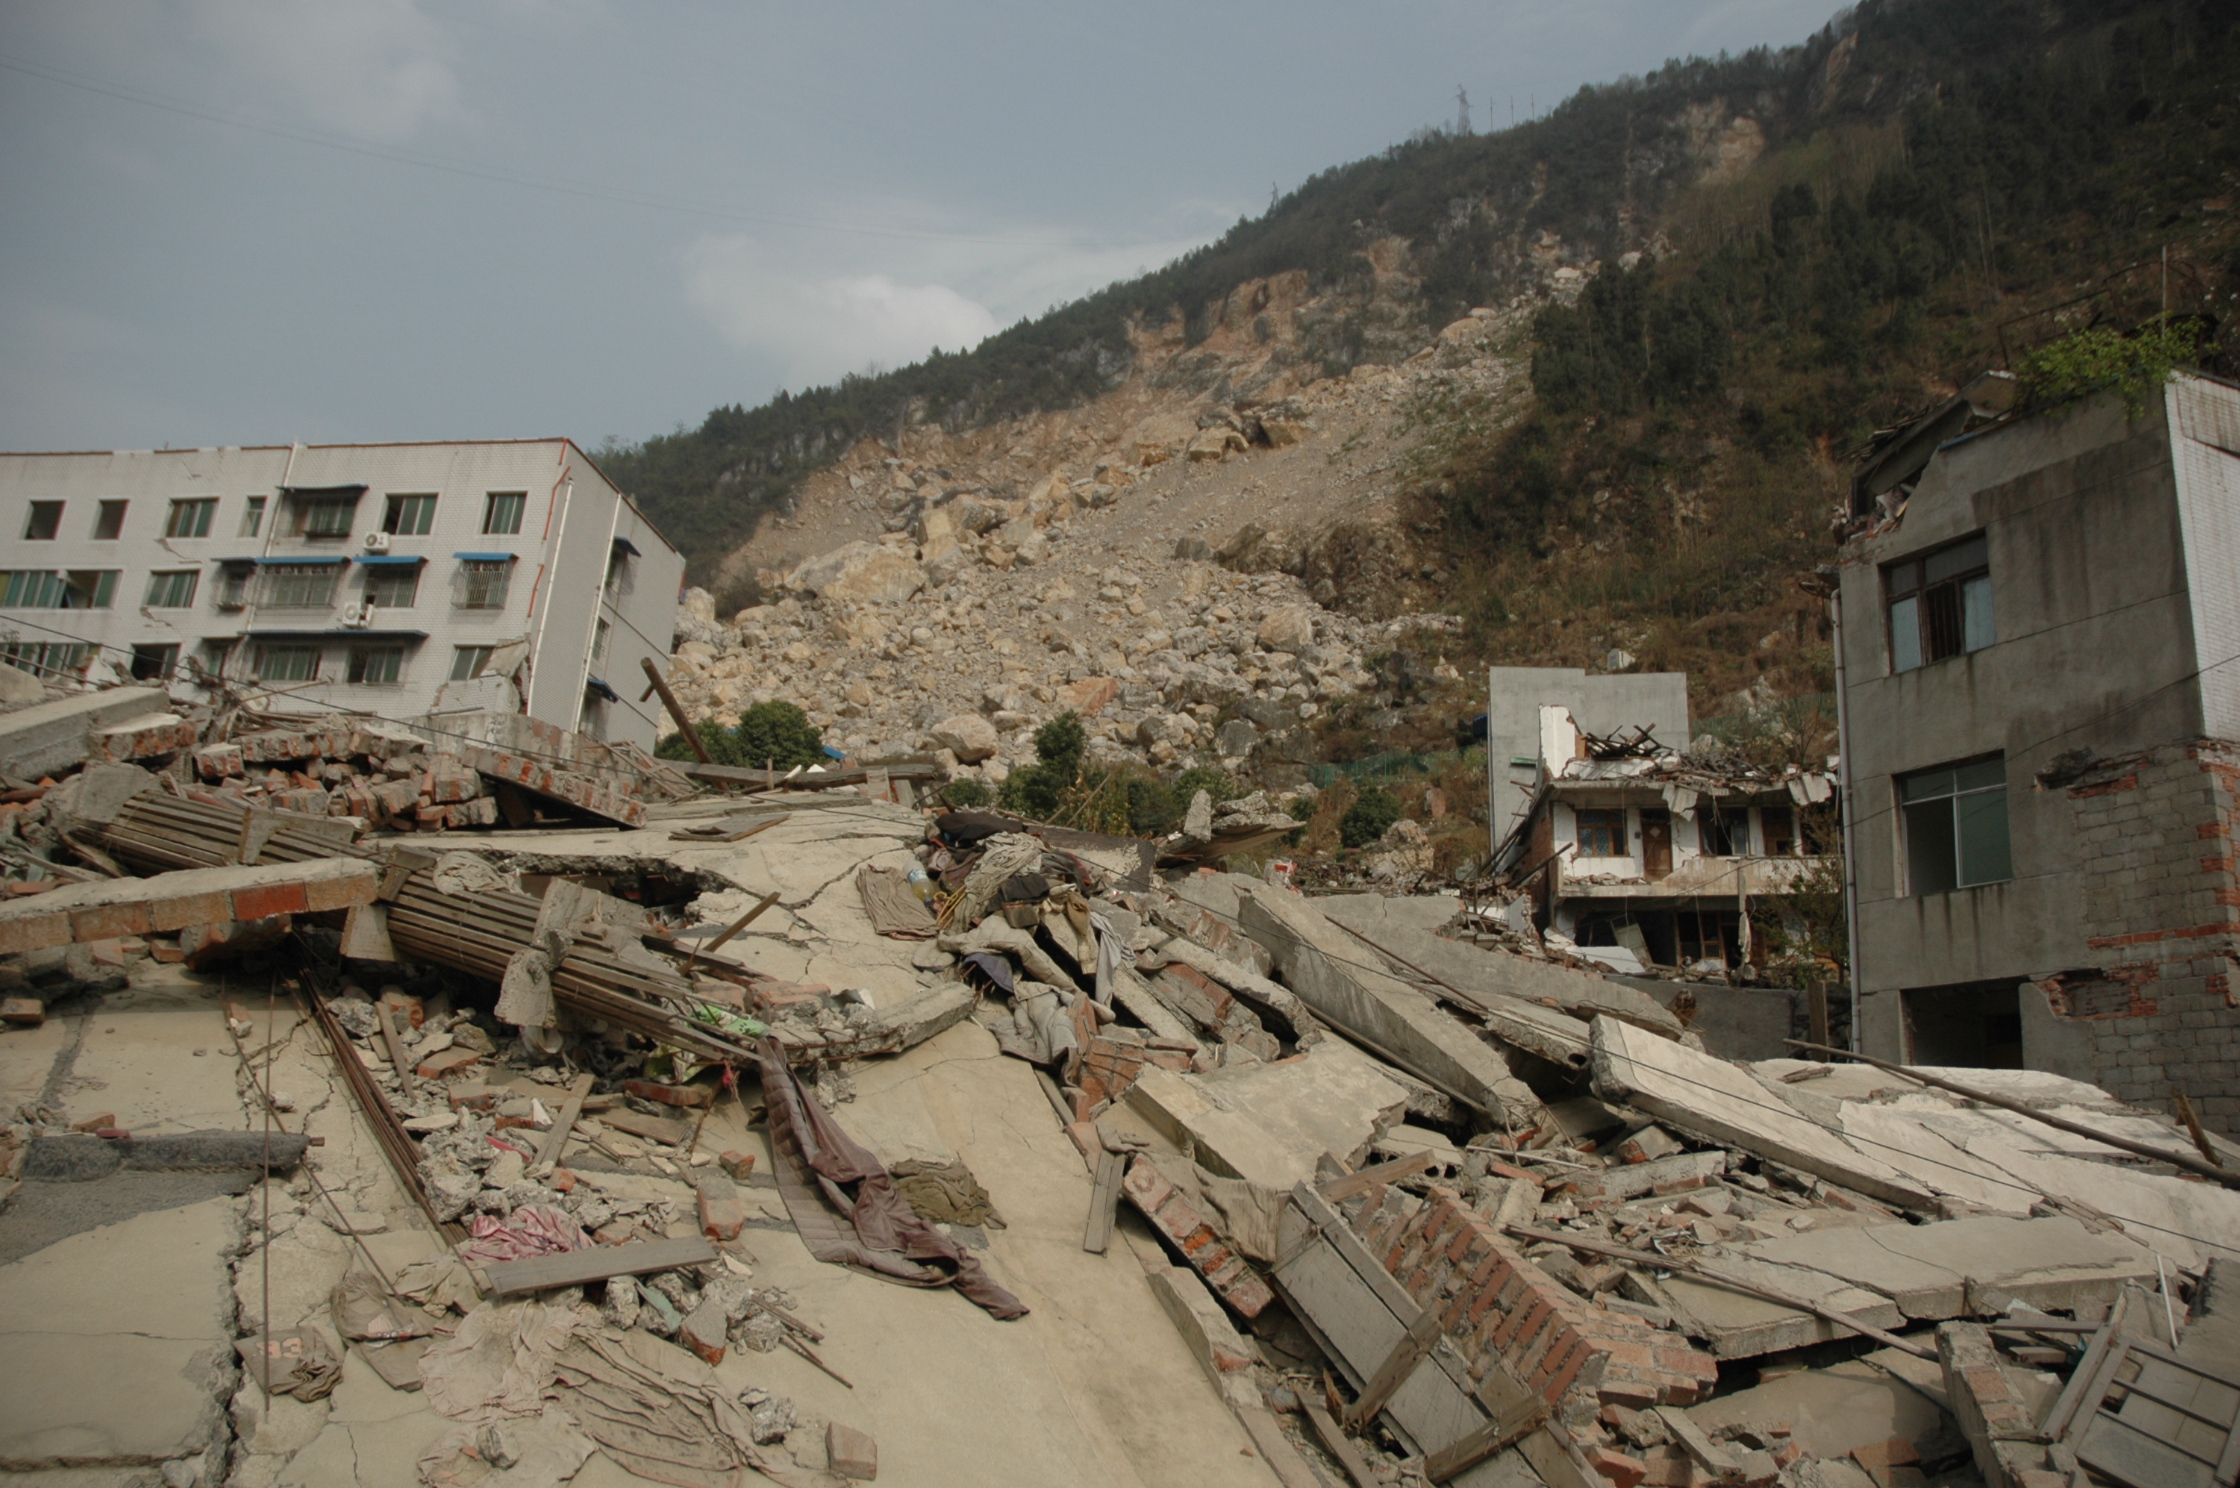 完全坍塌的房屋,远处是塌方过后的山体滑坡,当时这些滚滚落石不知道